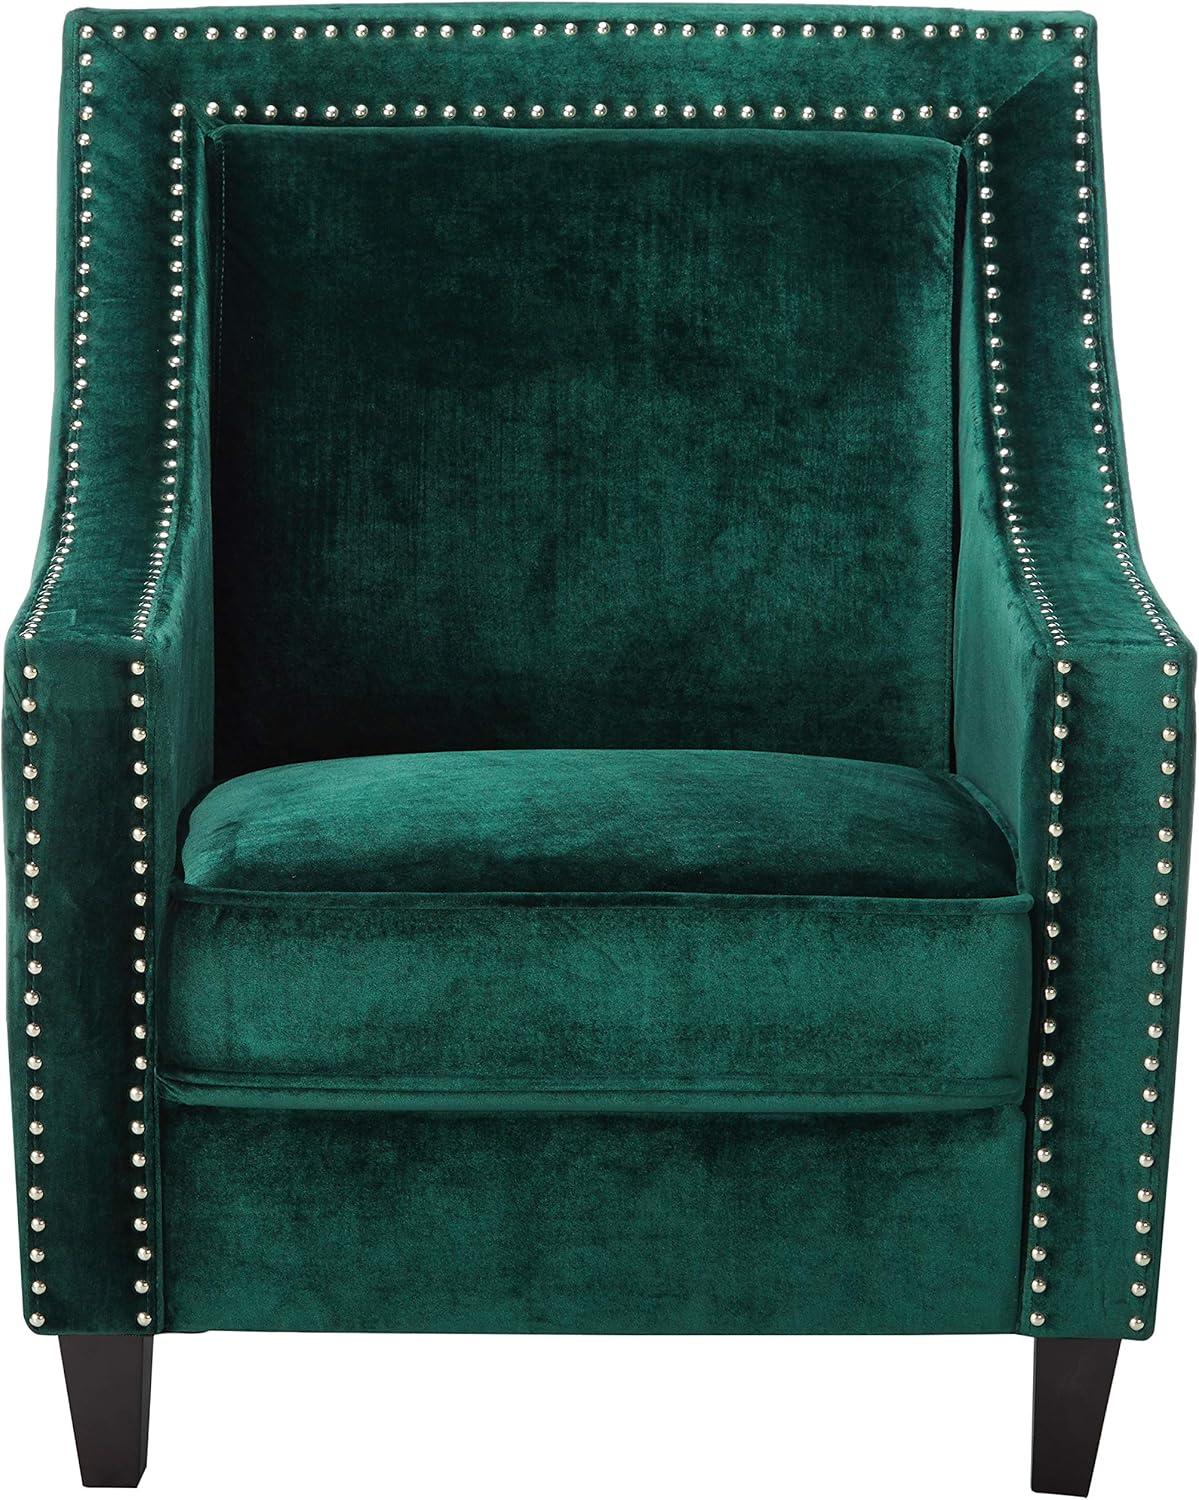 Camren Green Velvet Swoop Arm Accent Chair with Espresso Wood Legs